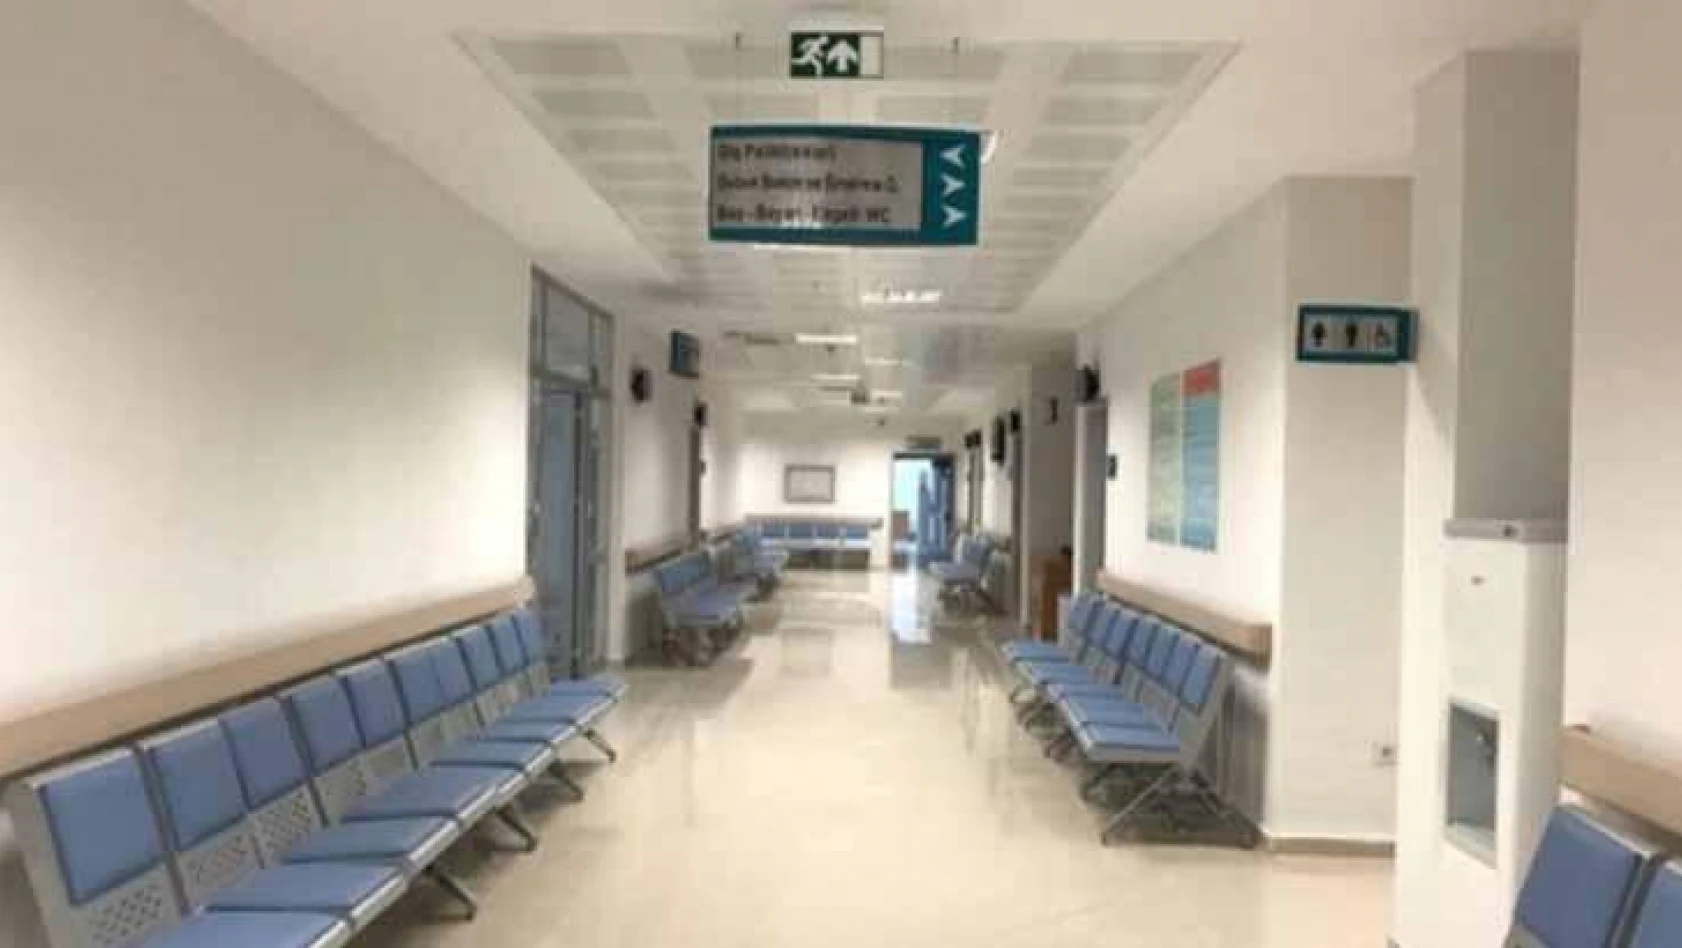 Kayseri'de bazı özel hastaneler acile gelen hastalardan ücret almayacak